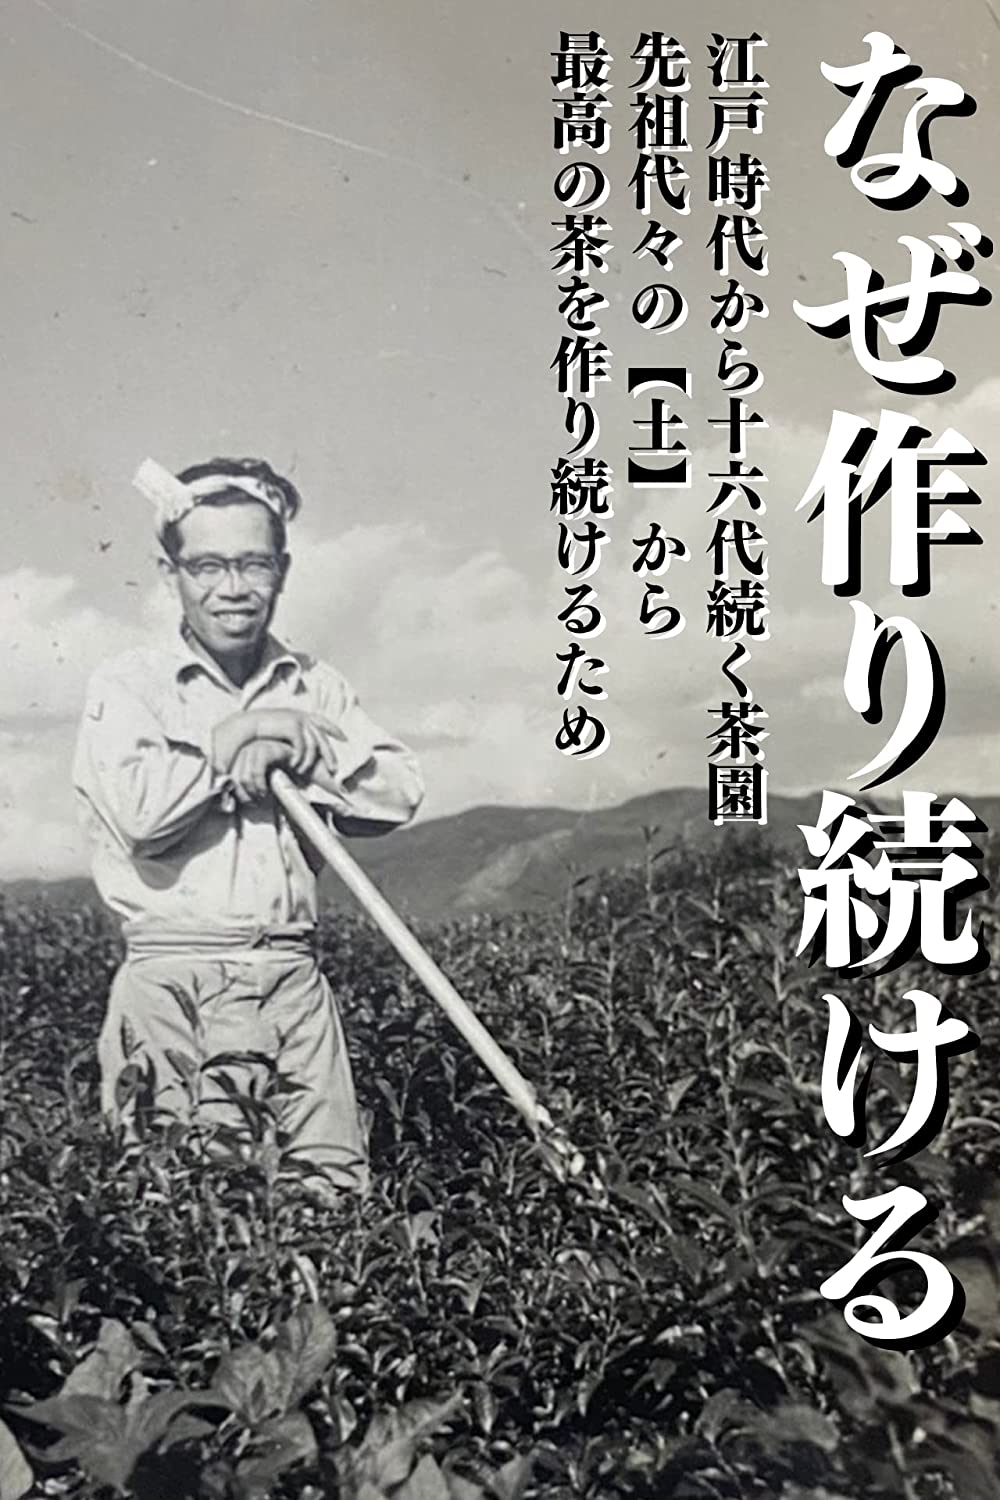 Kyoto Uji Hojicha Green Tea Tea Leaves Ujicha 100g by yoshida meichaen - NihonMura